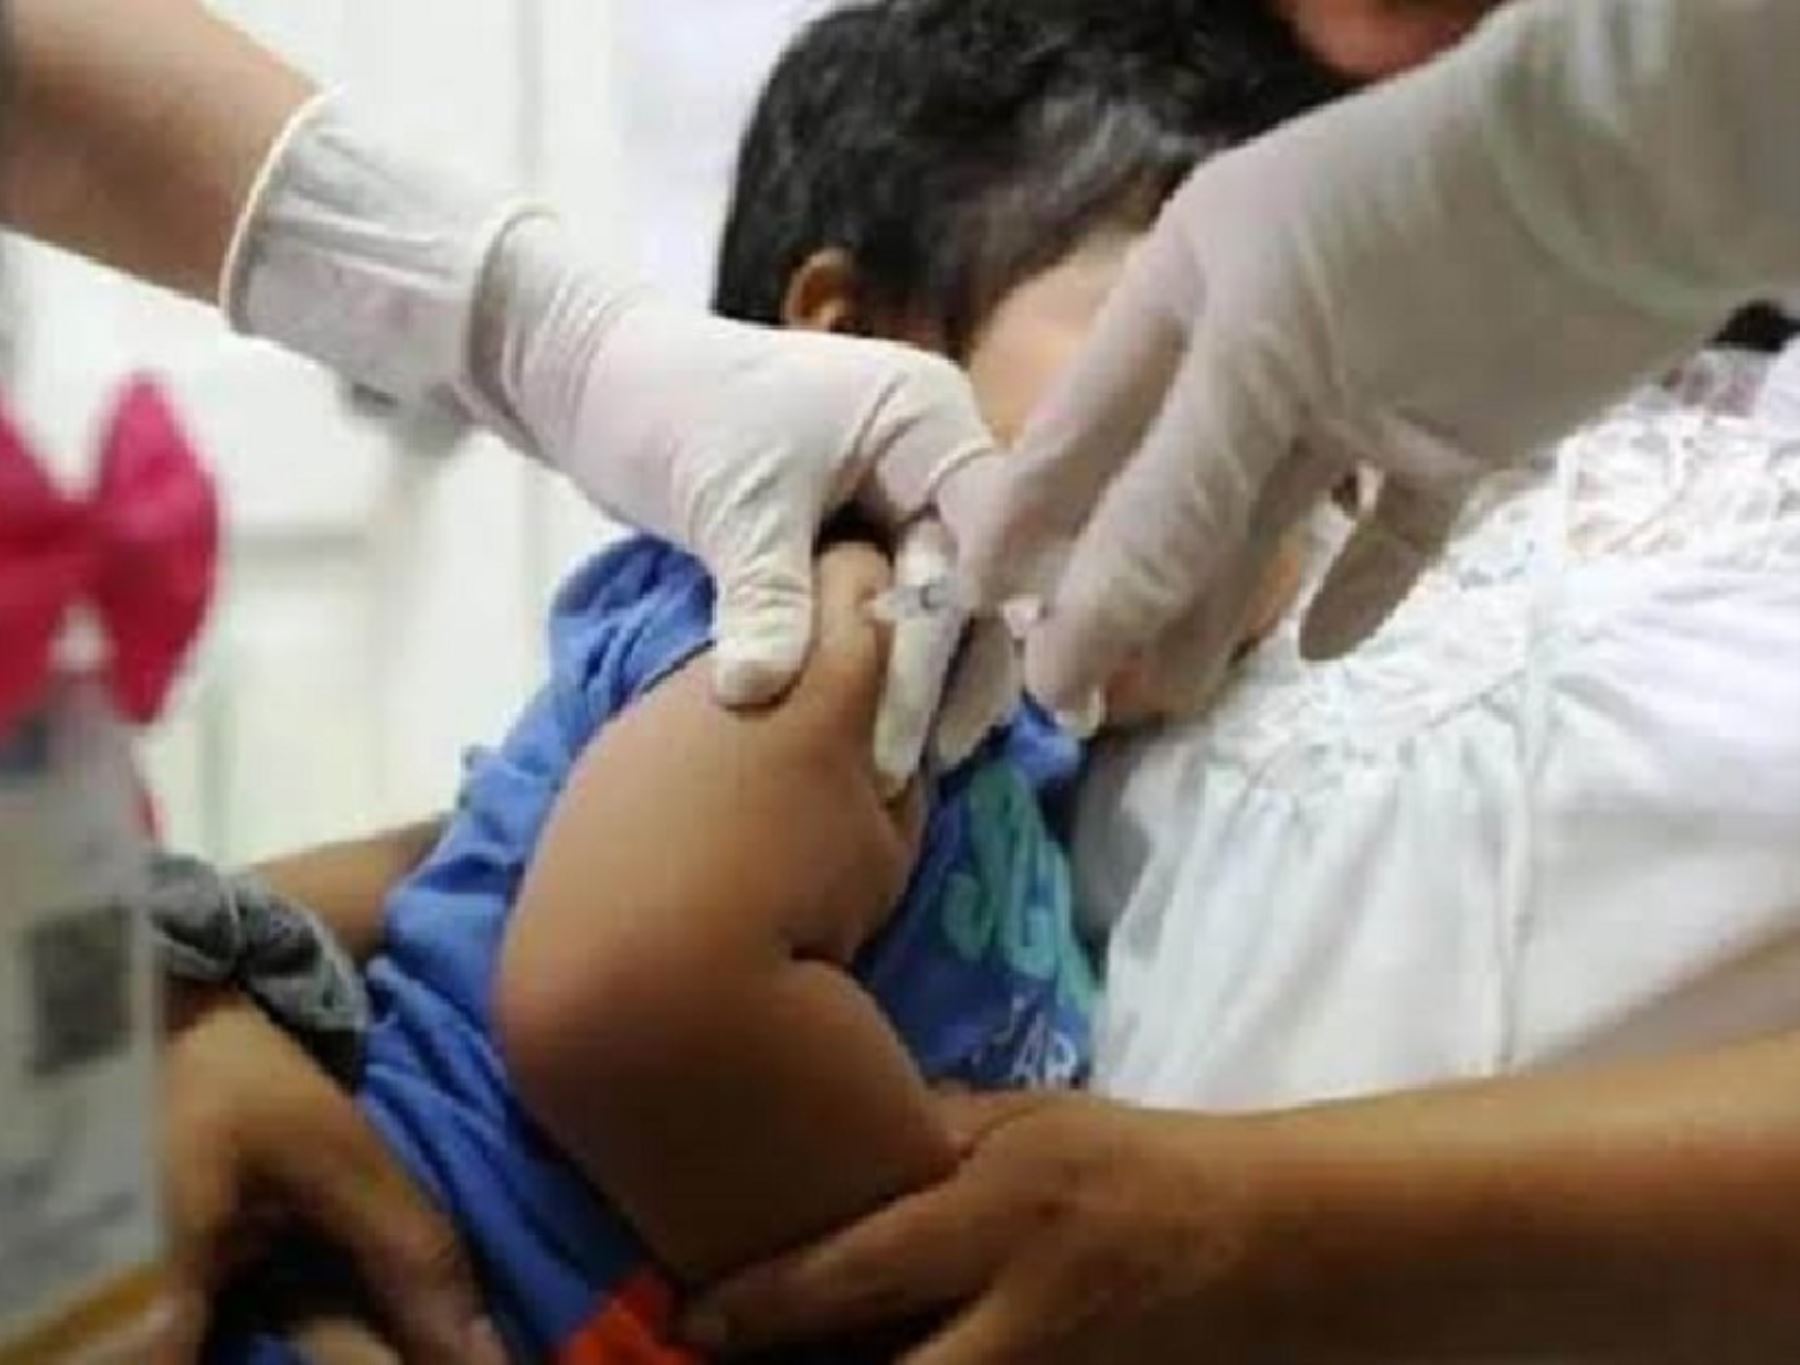 Autoridades de salud de Loreto investigan un segundo caso sospechoso de polio reportado en el distrito de Manseriche, provincia de Datem del Marañón.